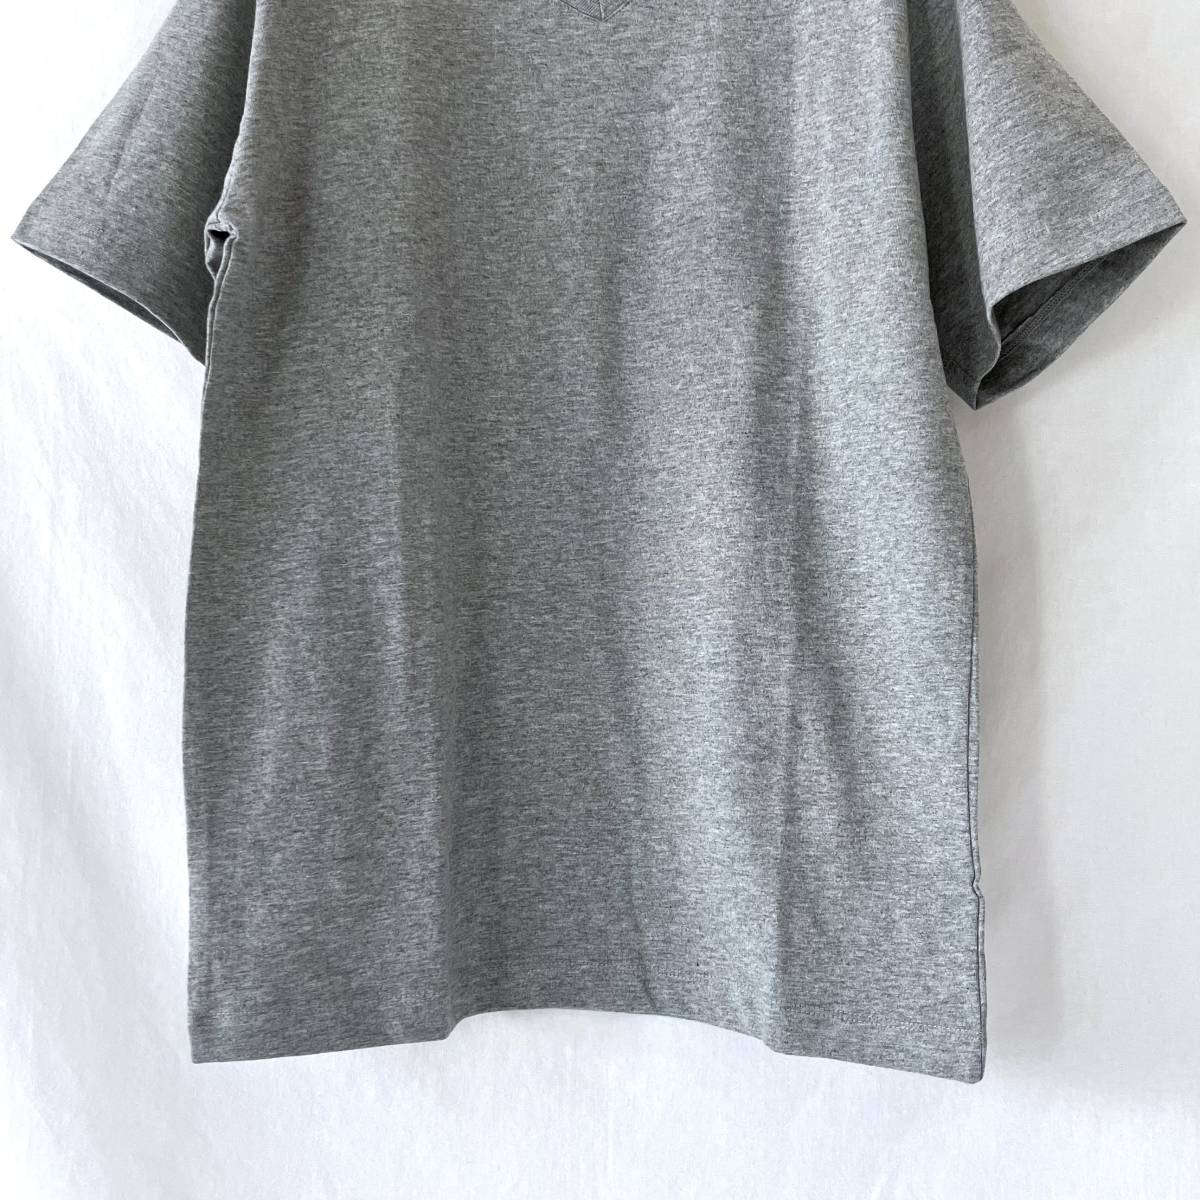 # с биркой новый товар не использовался # AVIREX # женский # короткий рукав футболка cut and sewn # серый # M # /